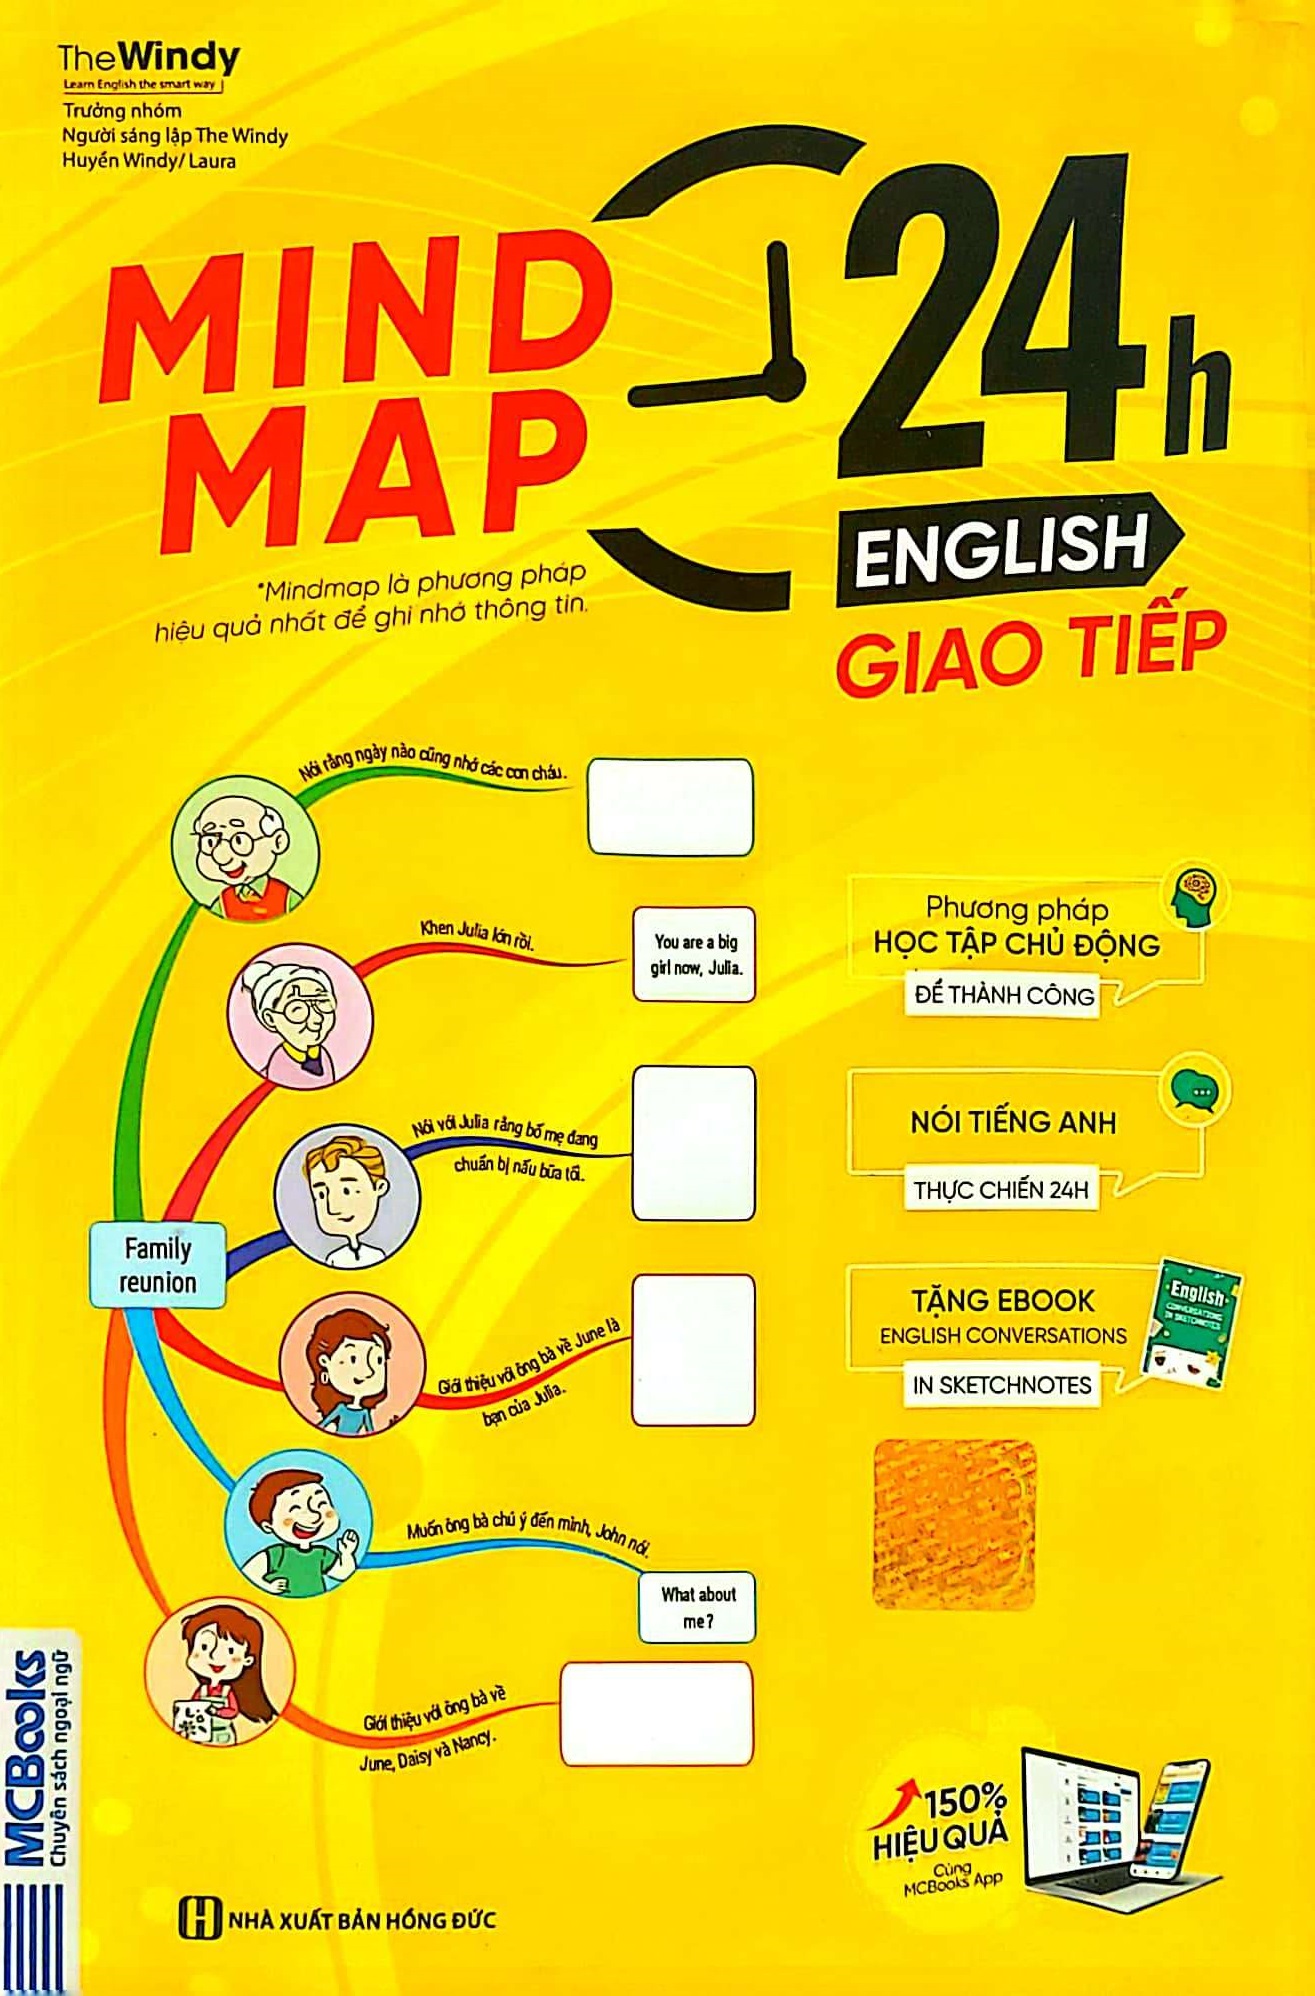 Mind Map 24H English - Giao Tiếp - Học Tiếng Anh Giao Tiếp Thực Chiến Cực Kỳ Hiệu Quả Thông Qua Sơ Đồ Tư Duy PDF